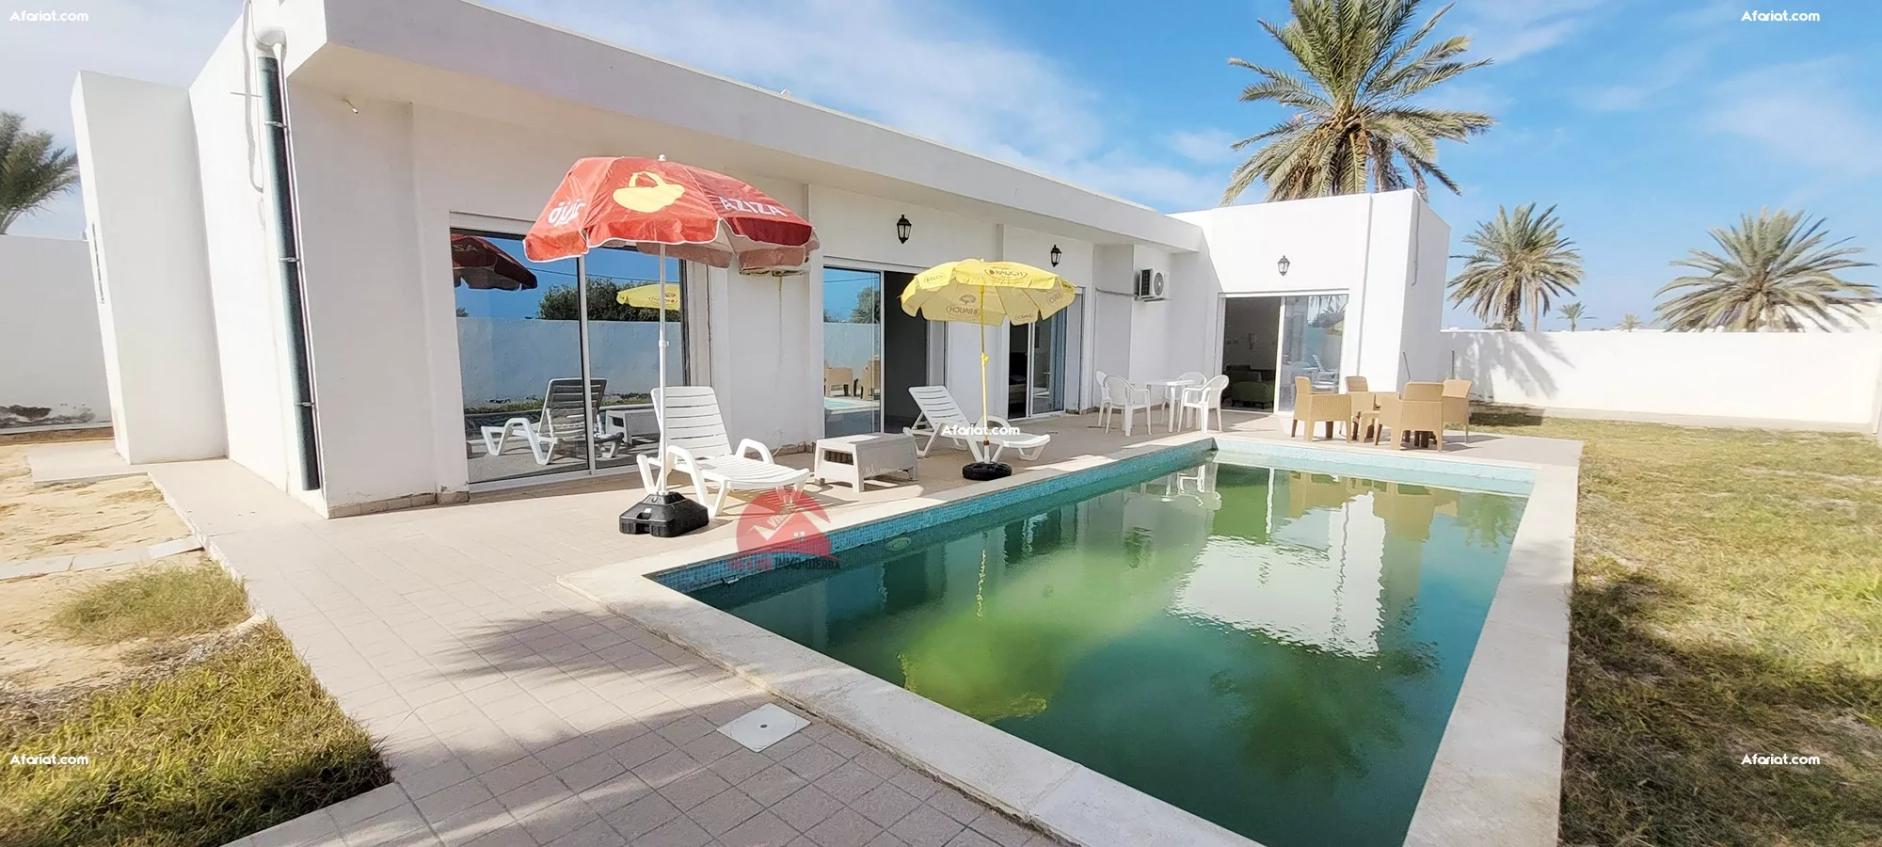 Location villa avec piscine à temlel midoun – réf l744